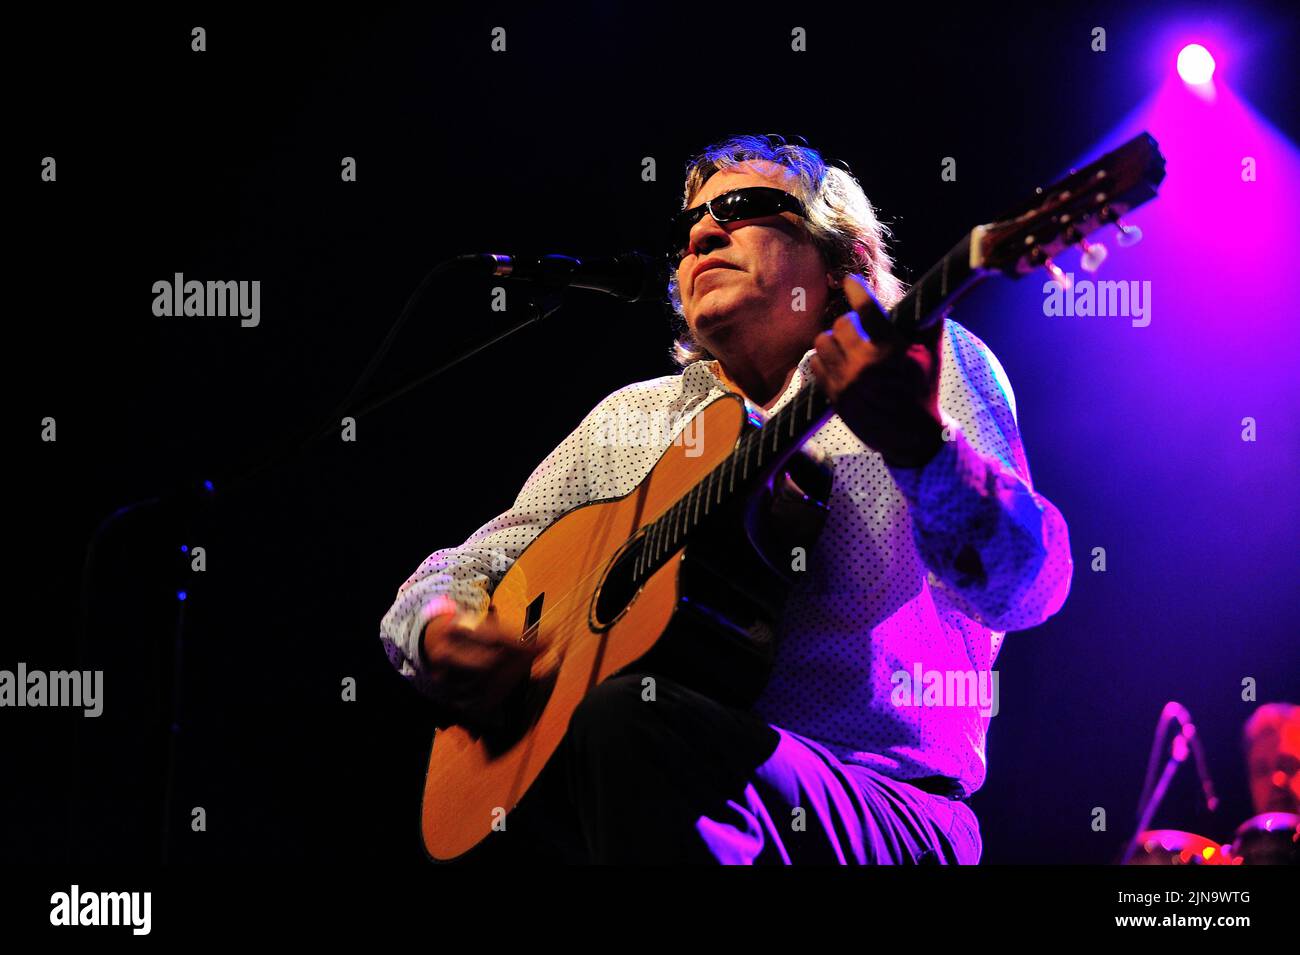 José Feliciano, chanteur et guitariste virtuose portoricain, né aveugle en permanence en raison du glaucome congénital, se présente sur scène lors d'un concert en direct, José Feliciano (né 10 septembre 1945) est un guitariste, chanteur et compositeur virtuose portoricain, photo Kazimierz Jurewicz Banque D'Images